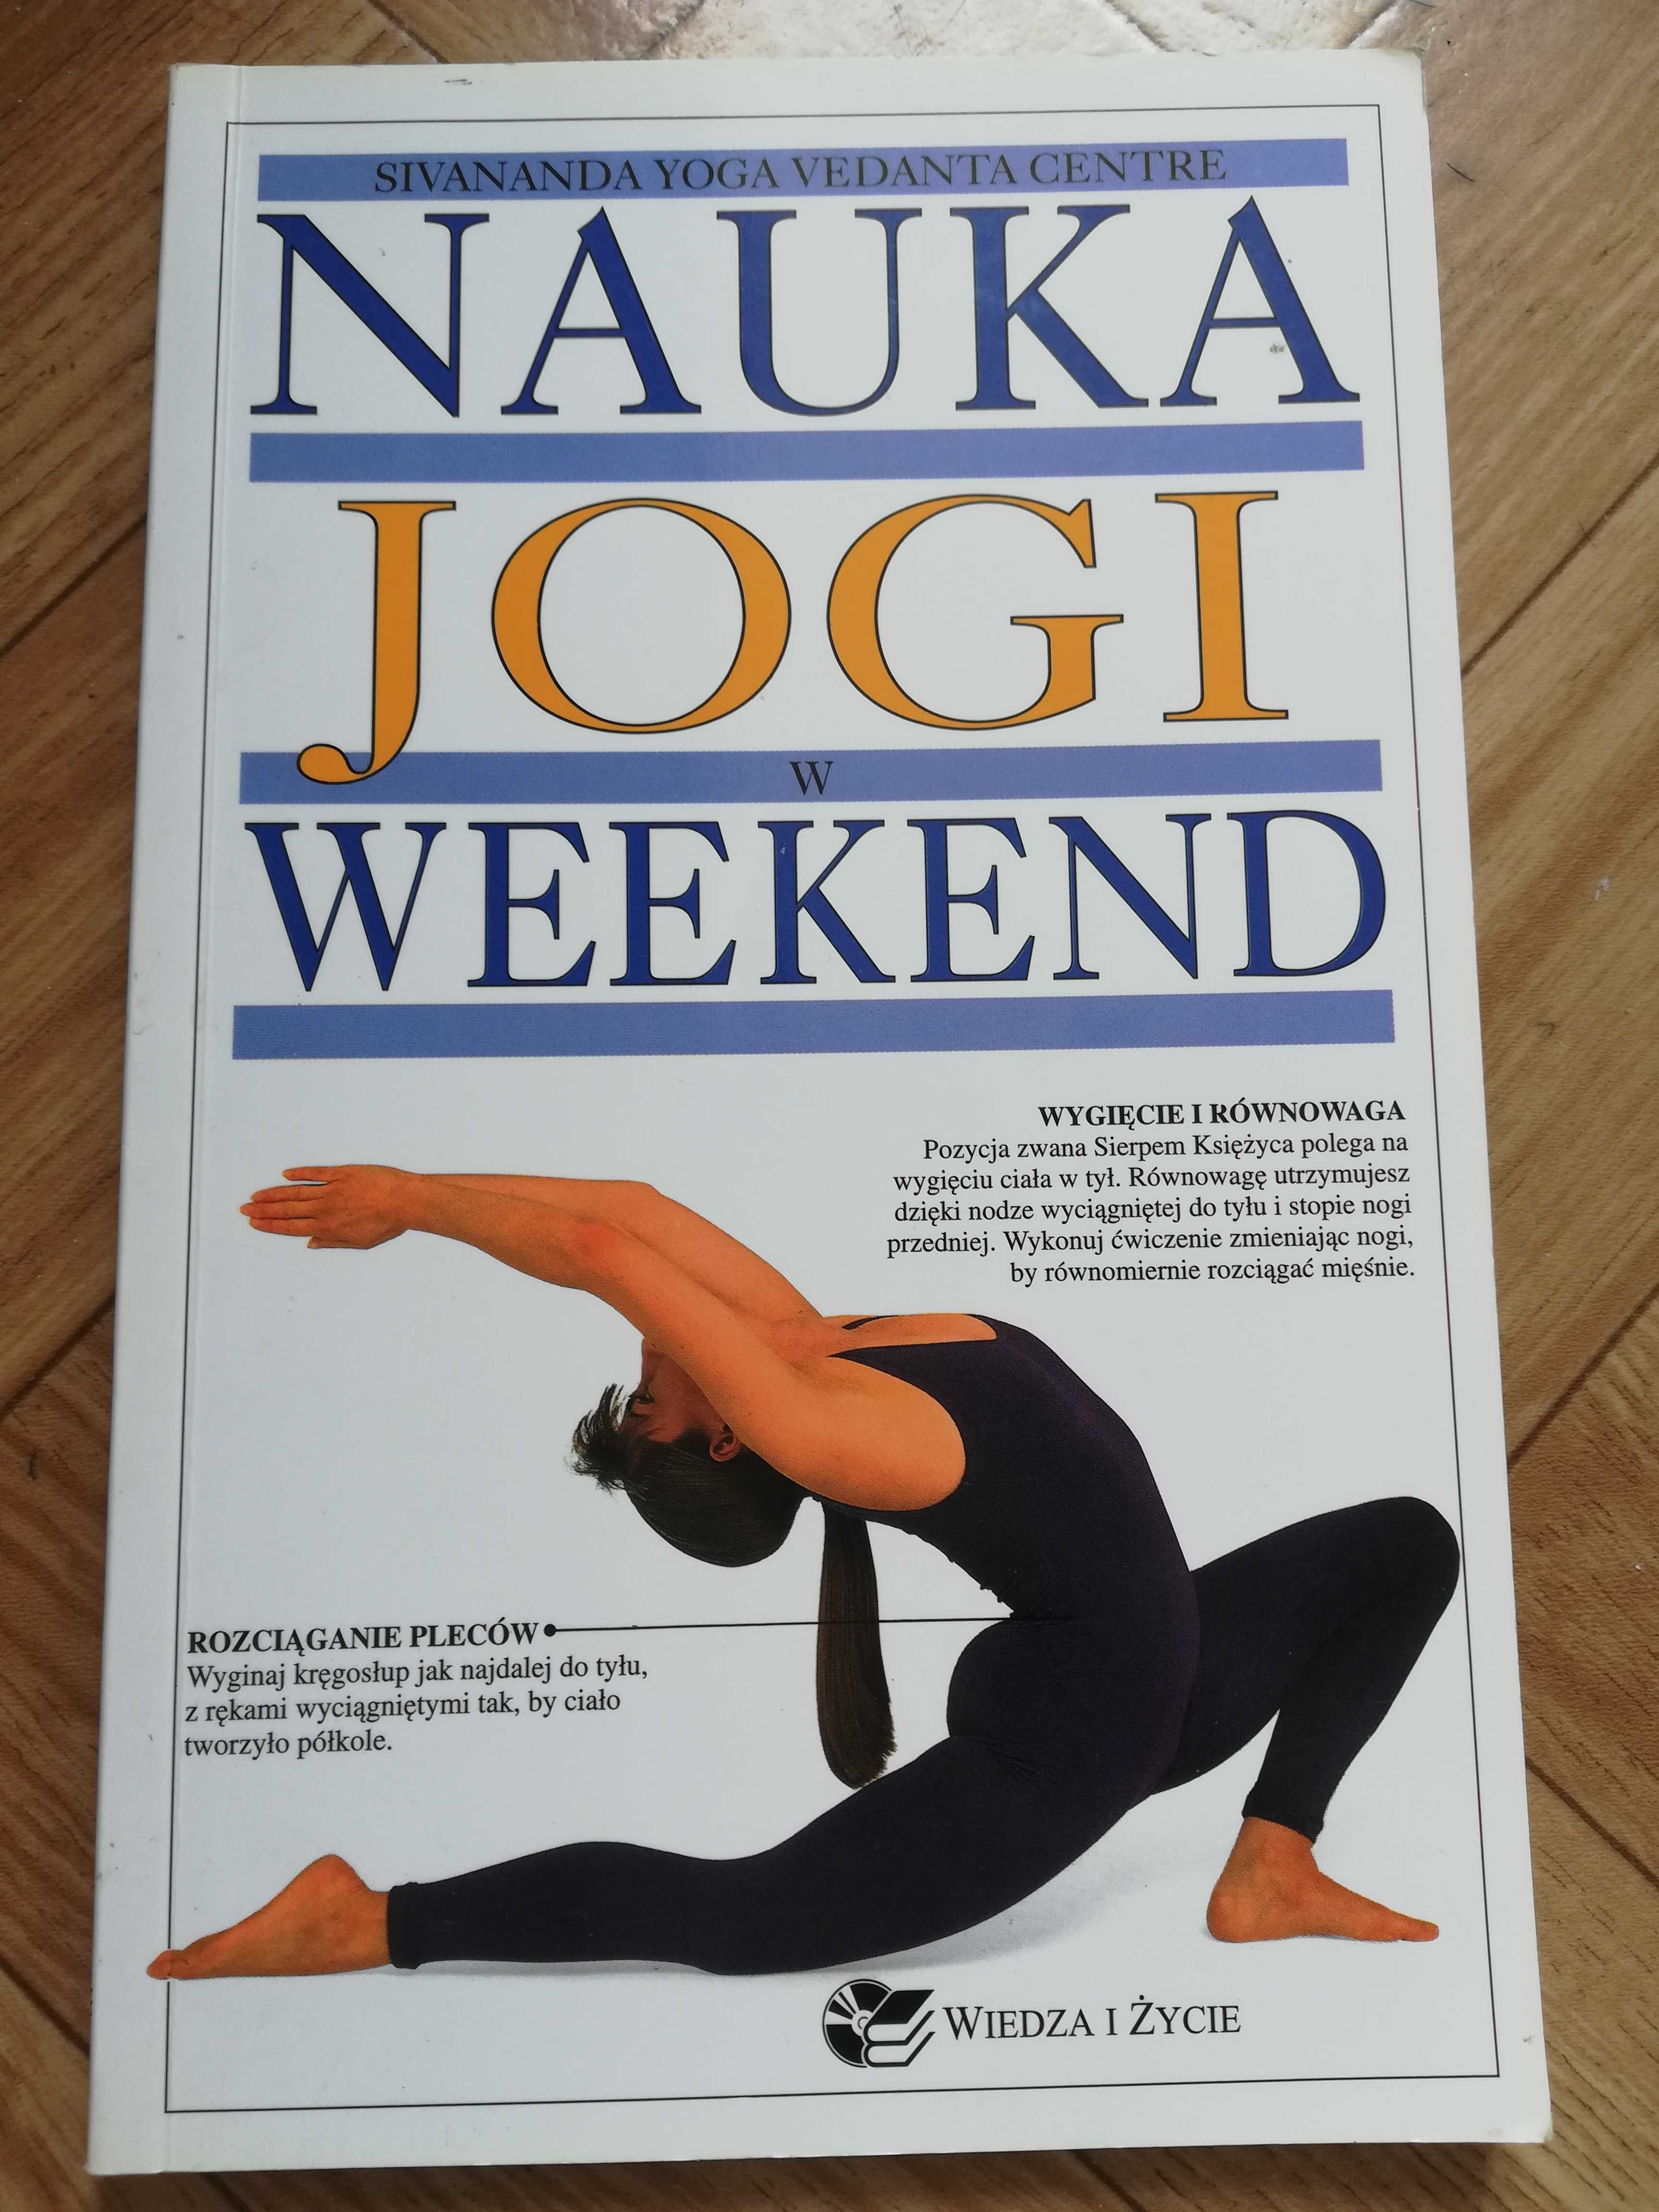 Nauka jogi w weekend"